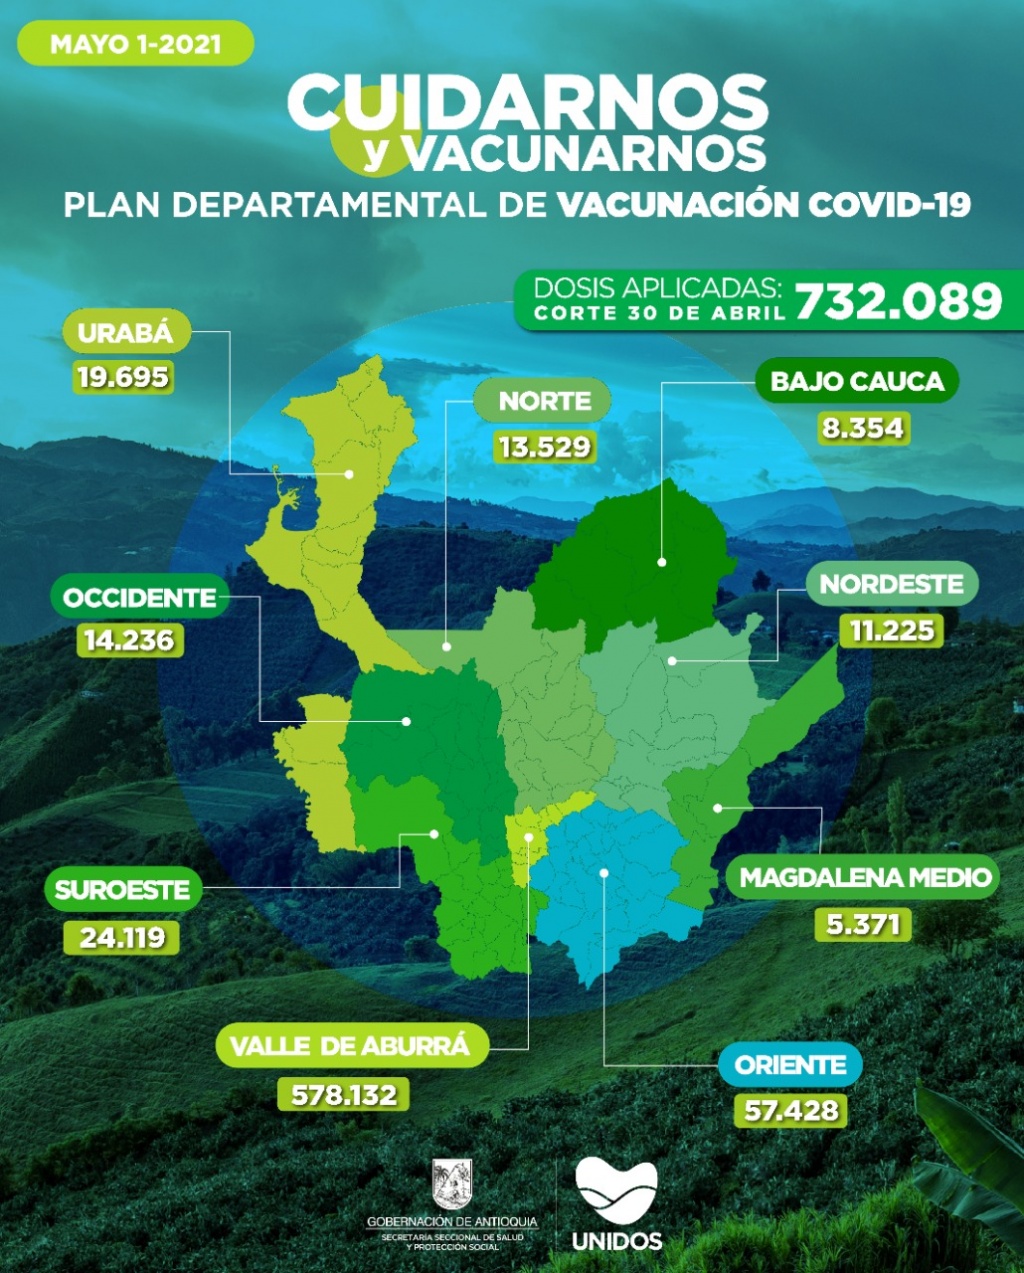 Medellín, 1o. de mayo de 2021  Con 23.616 dosis aplicadas, Antioquia llega a 732.089 vacunados contra COVID19  - De acuerdo con el último reporte, este 30 de abril, Antioquia aplicó 23.616 nuevas vacunas contra COVID19 entre etapa 1 y etapa 2.  - Cor